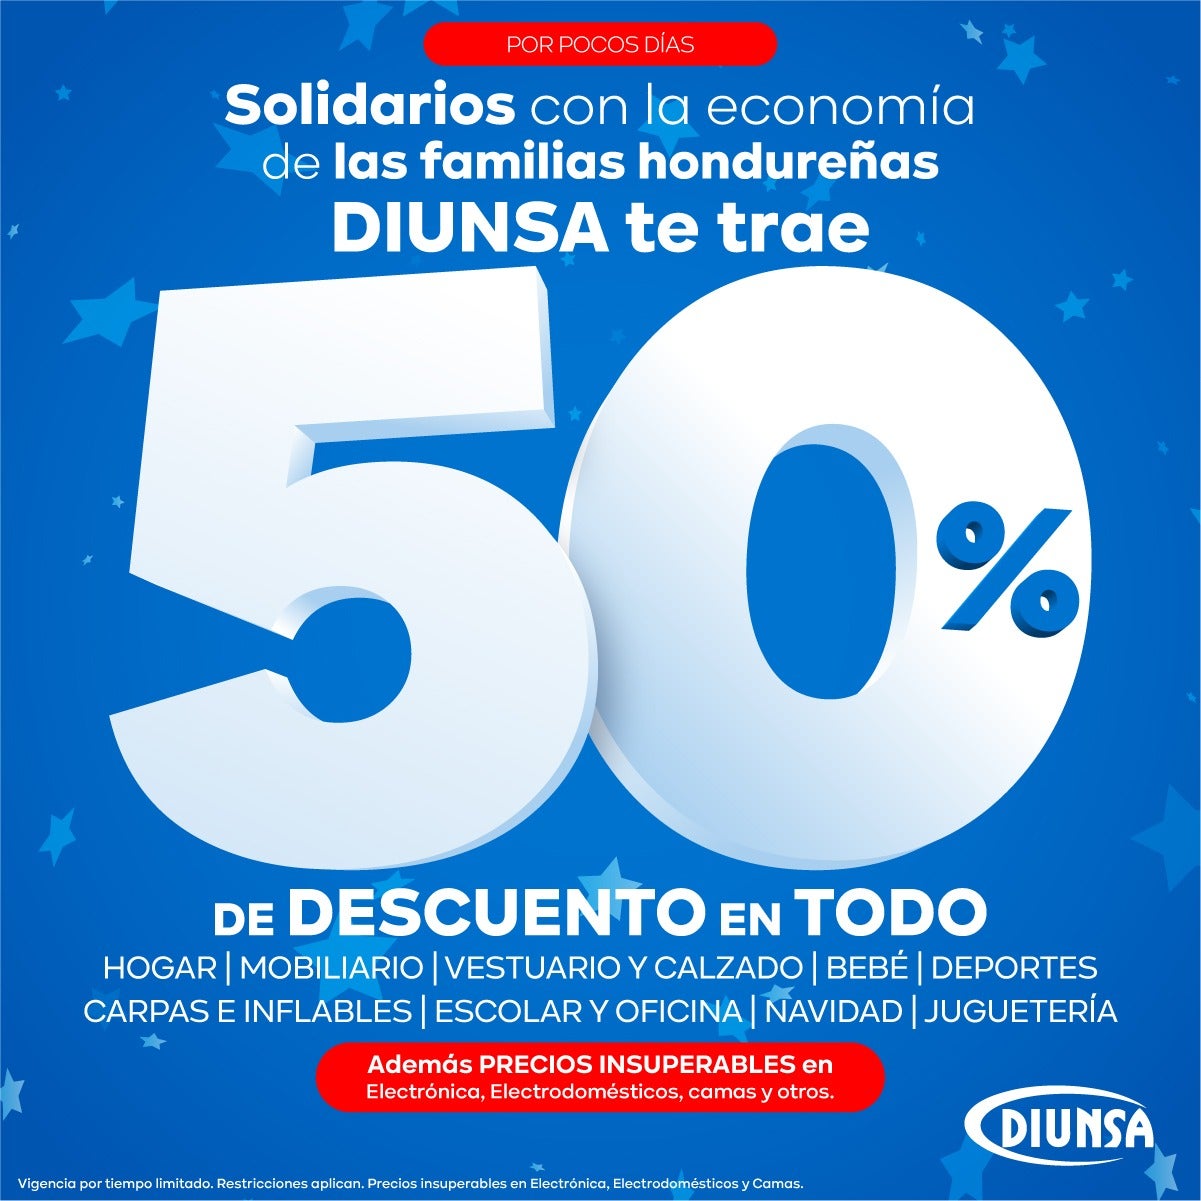 Diunsa solidario!: 50% de descuento en todas las tiendas de Honduras